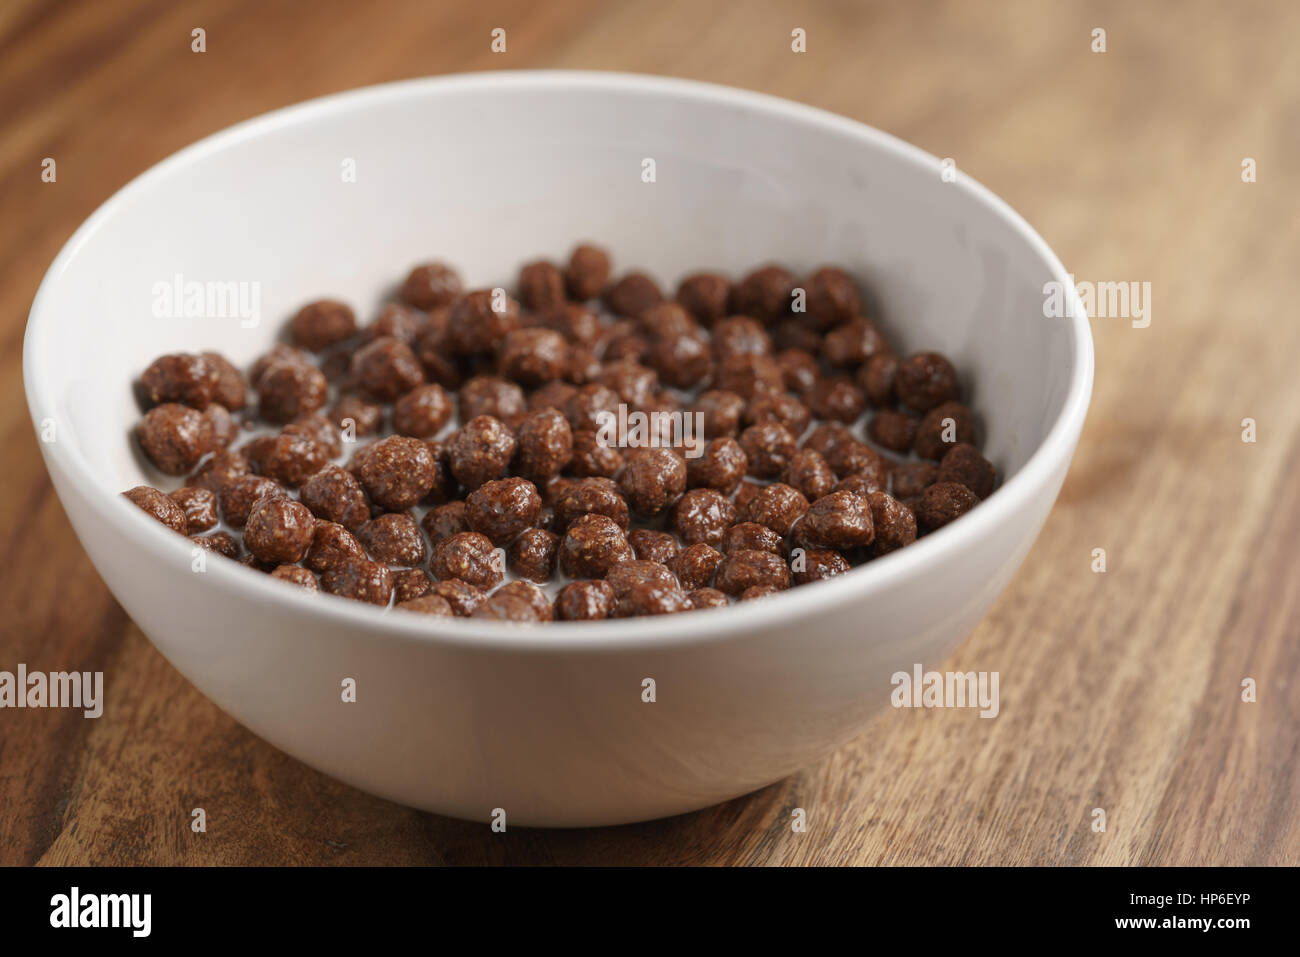 Las bolas de cereales de chocolate con leche en el recipiente blanco para desayunar en la mesa de madera, enfoque superficial Foto de stock